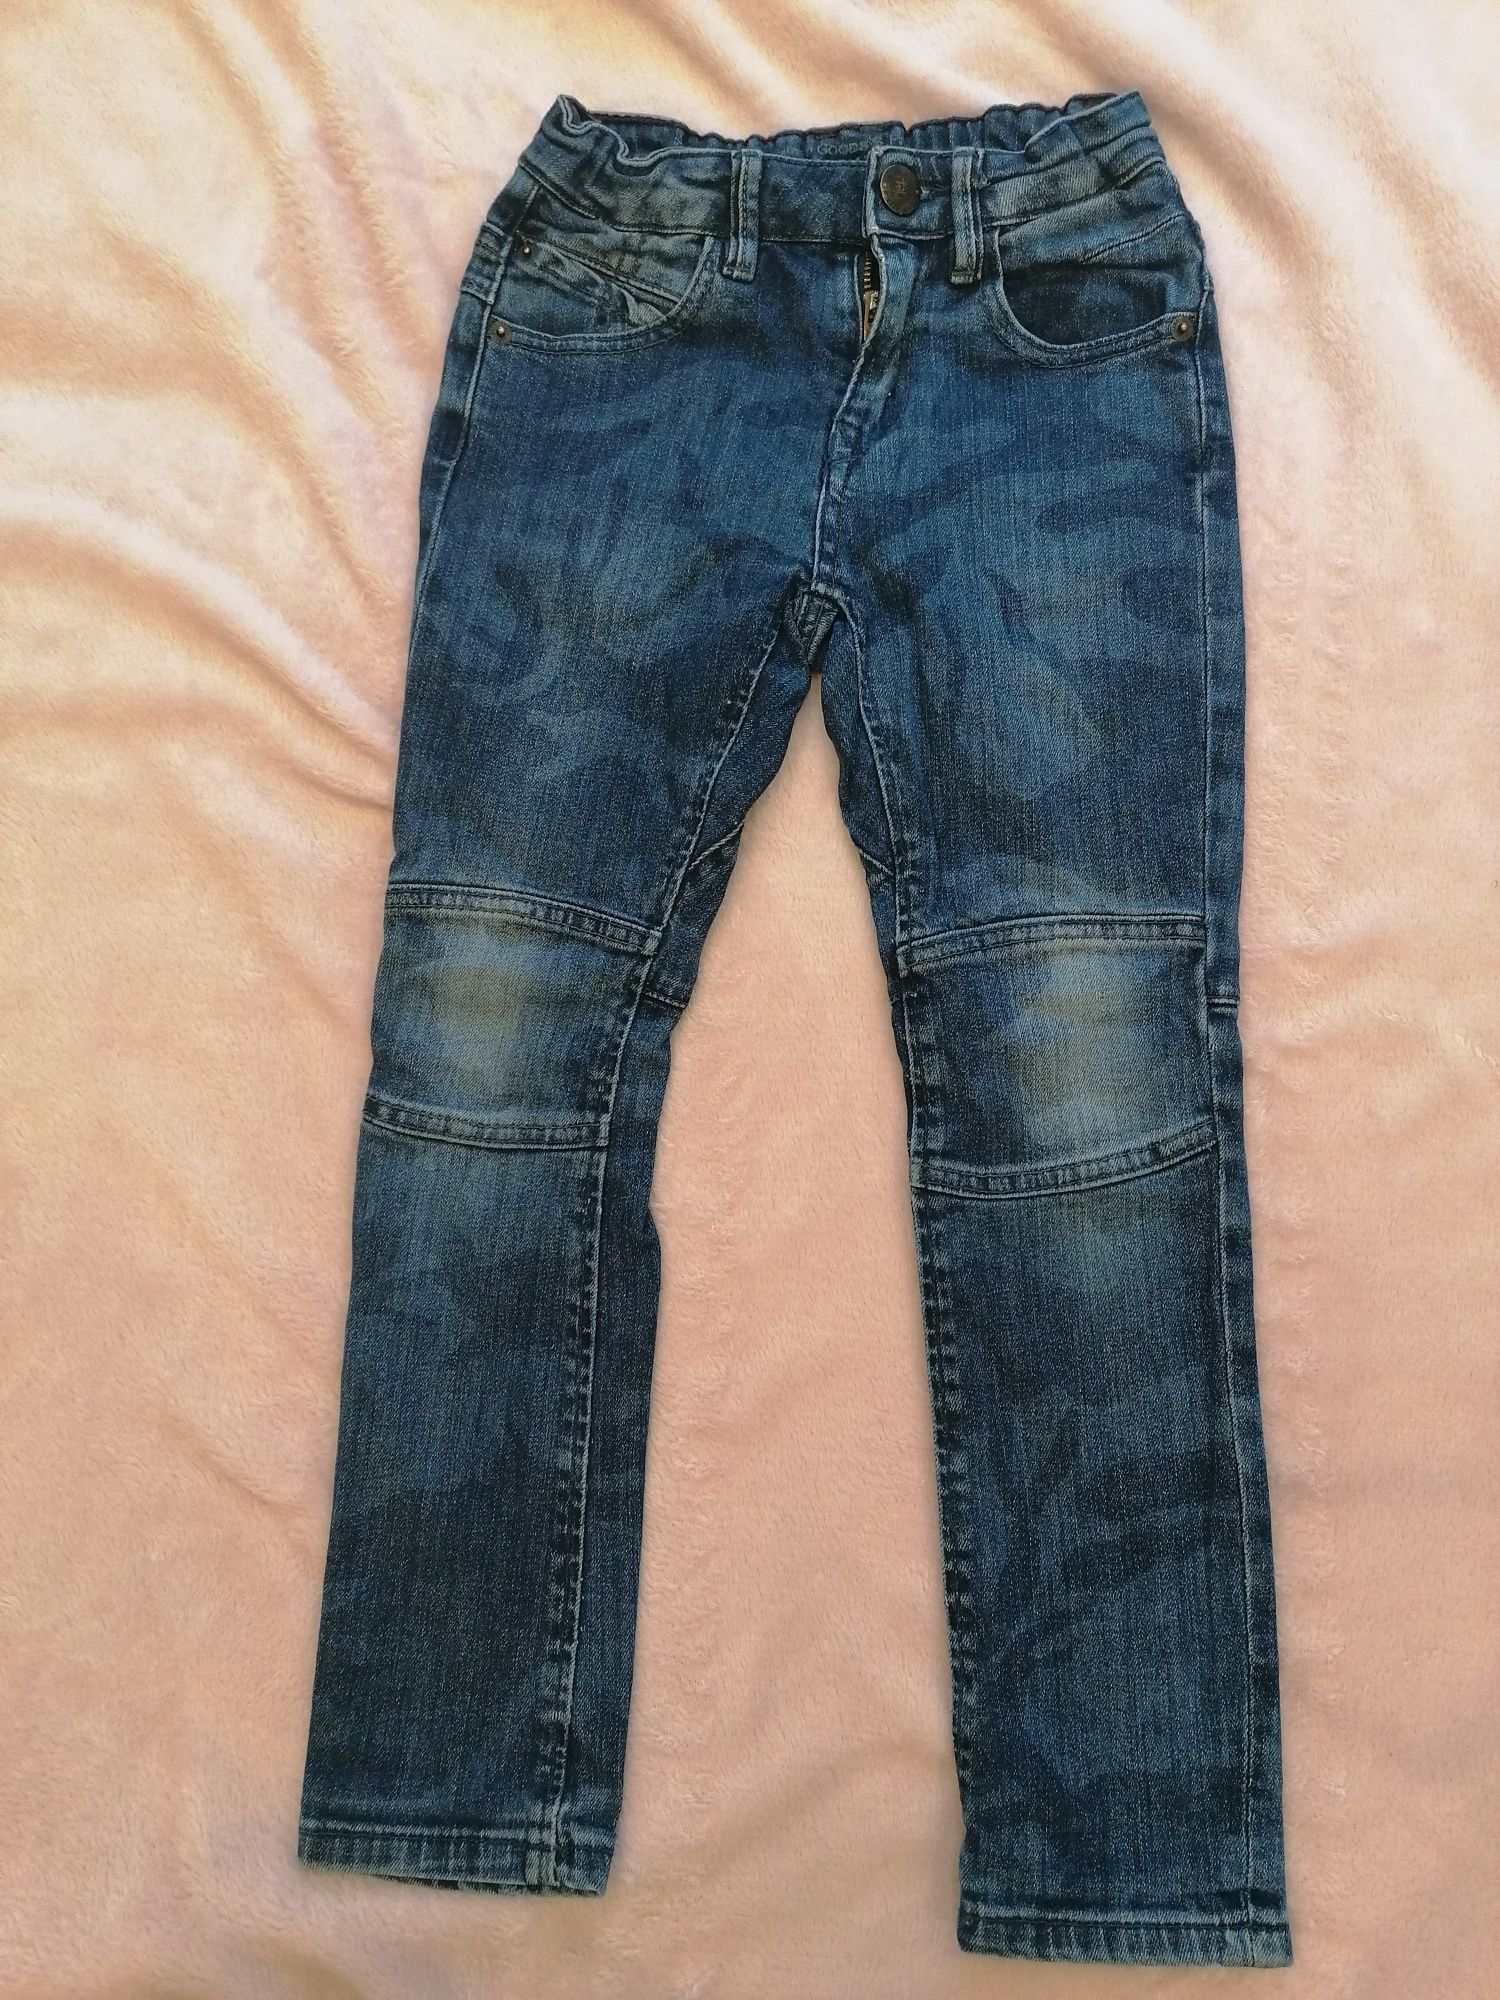 Spodnie jeans moro Zara rozmiar 118 chłopięce młodzieżowe